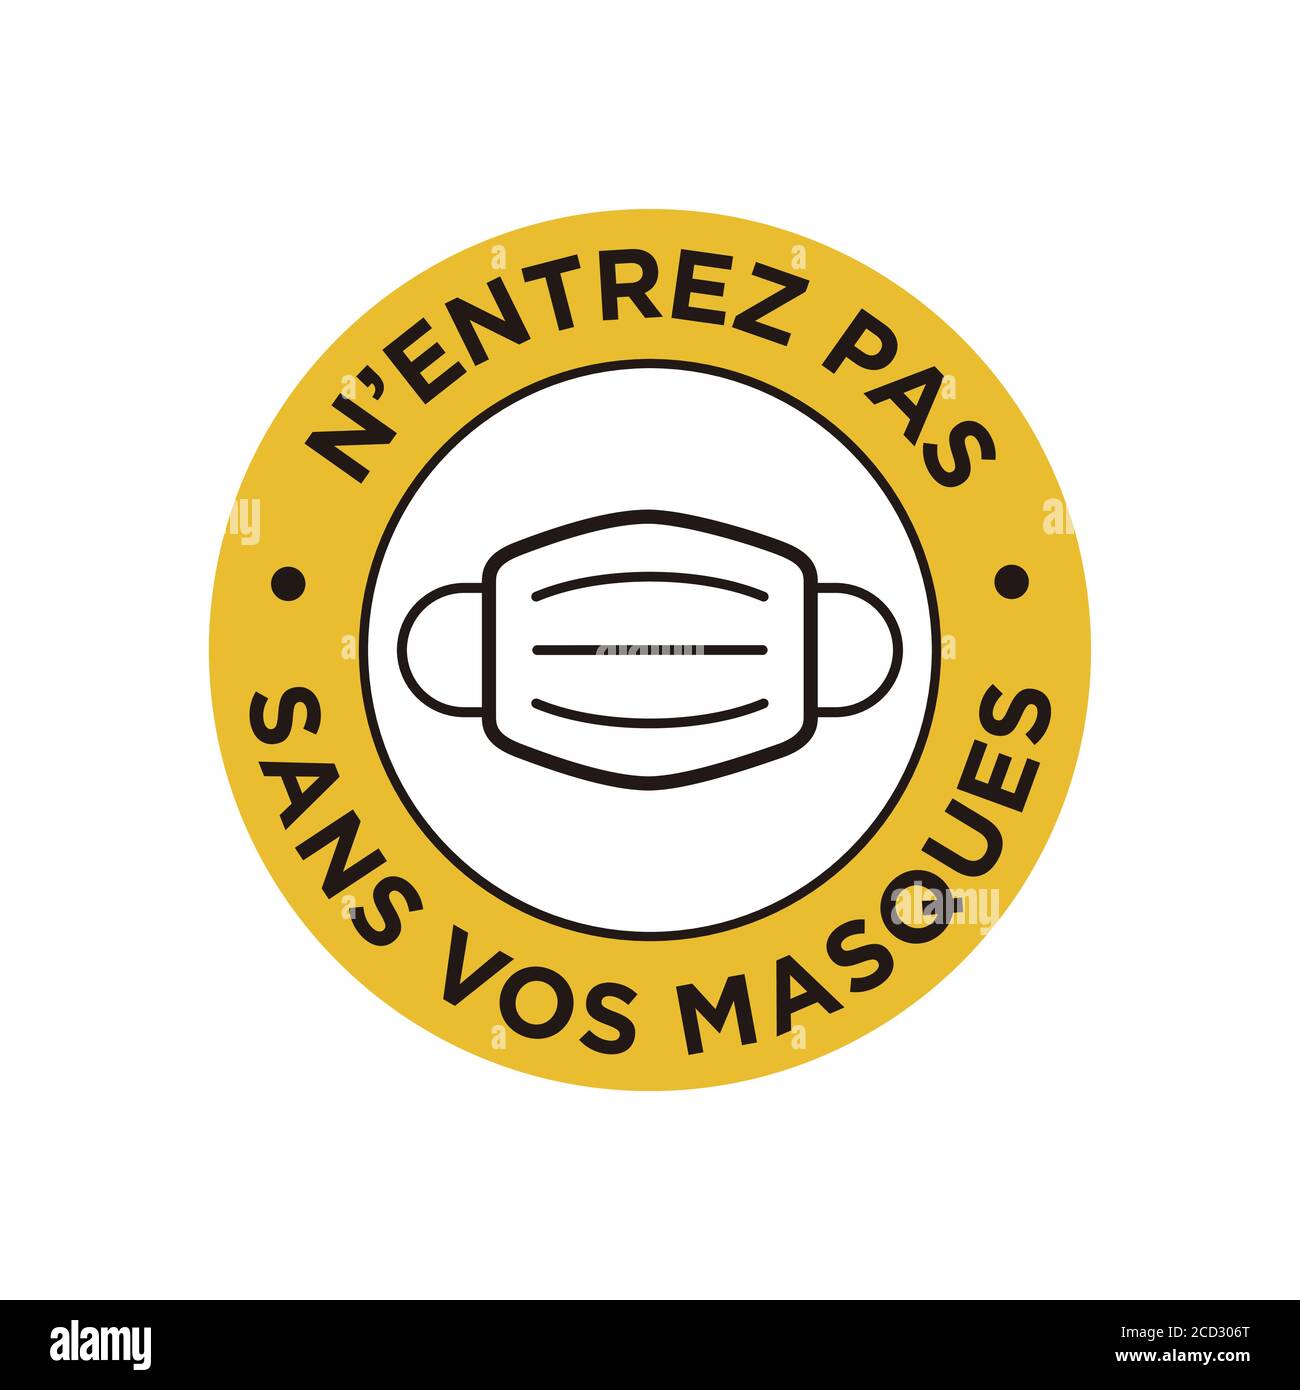 Kein Eintrag ohne Gesichtsmaske in Französisch Symbol geschrieben. Rundes und gelbes Symbol über die obligatorische Verwendung von Gesichtsmaske zur Vorbeugung von Coronavirus. Stock Vektor